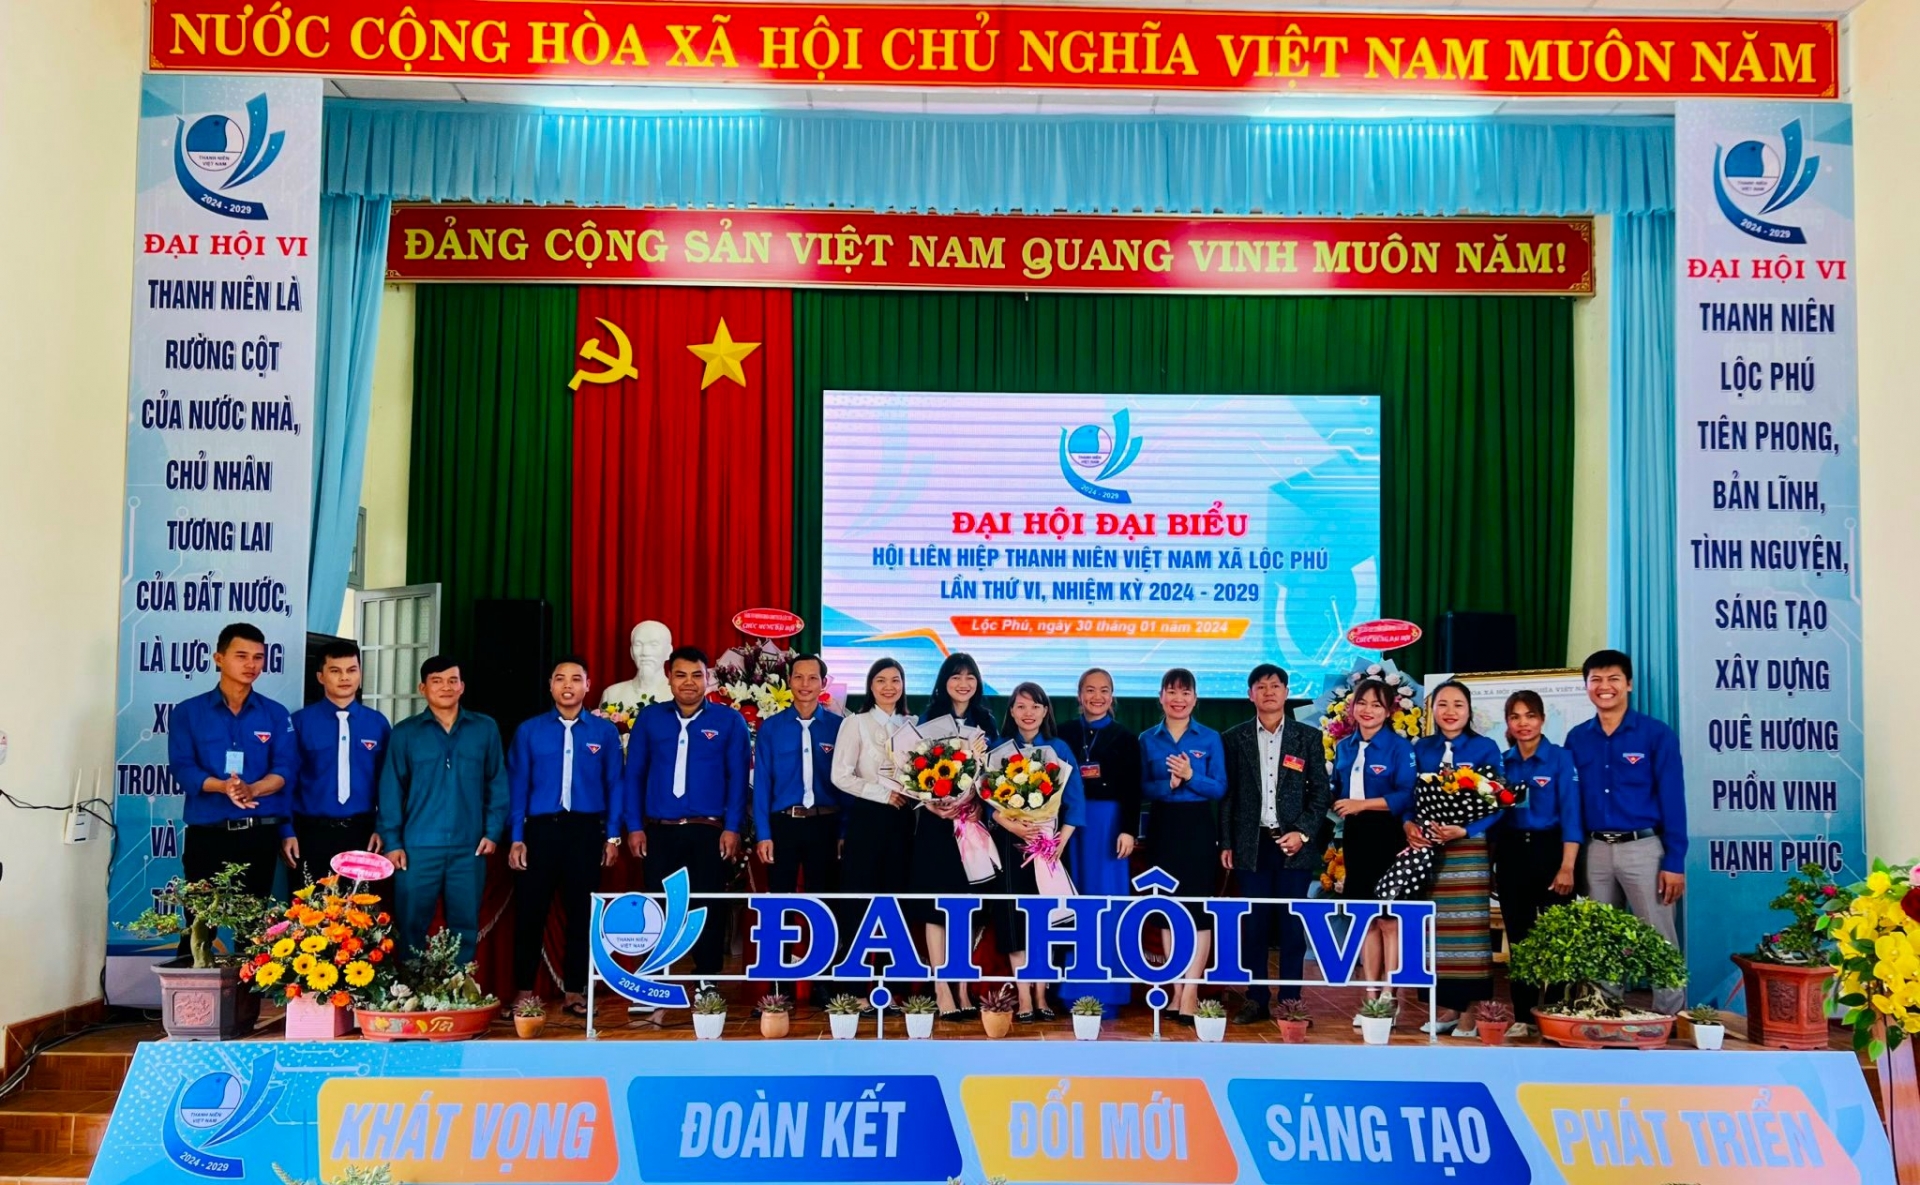 Ra mắt Ủy ban Hội LHTN Việt Nam xã Lộc Phú nhiệm kỳ 2024 - 2029